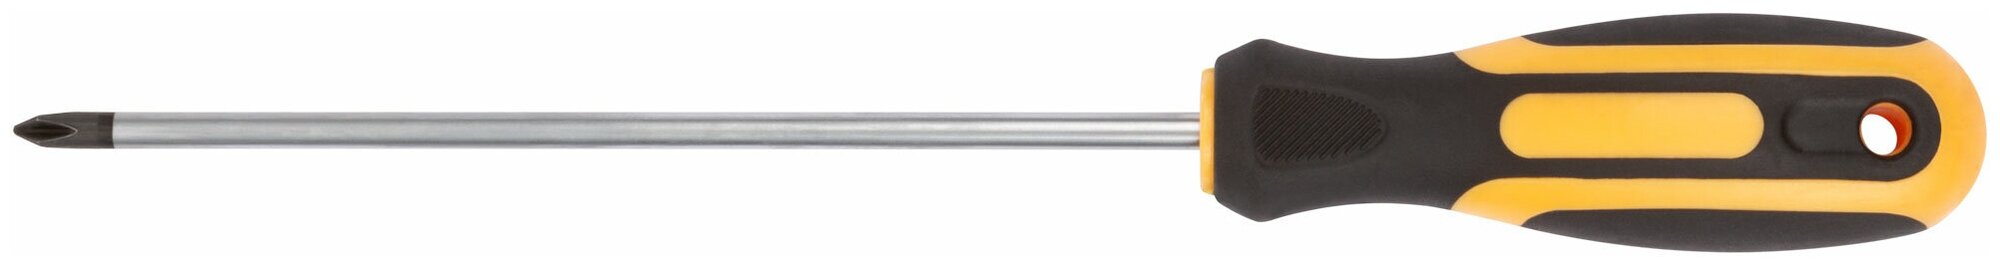 Отвертка FIT 55193 "Контур" CrV сталь прорезиненная ручка 5х150 мм РН1